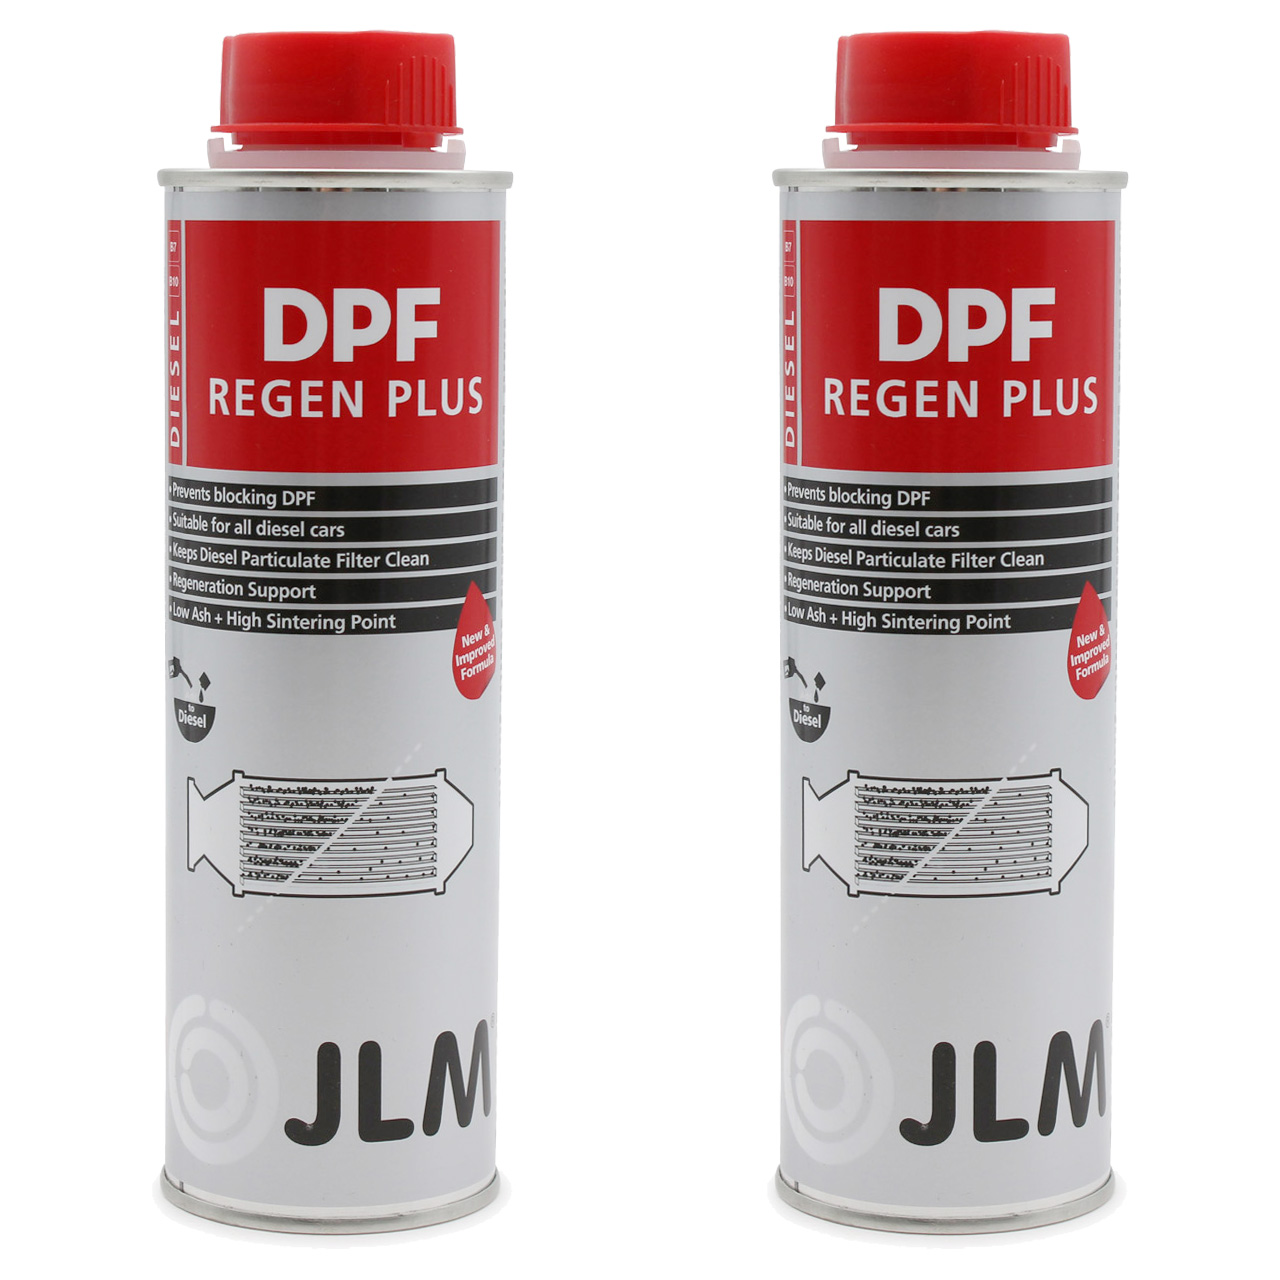 Diesel DPF Cleaner Plus